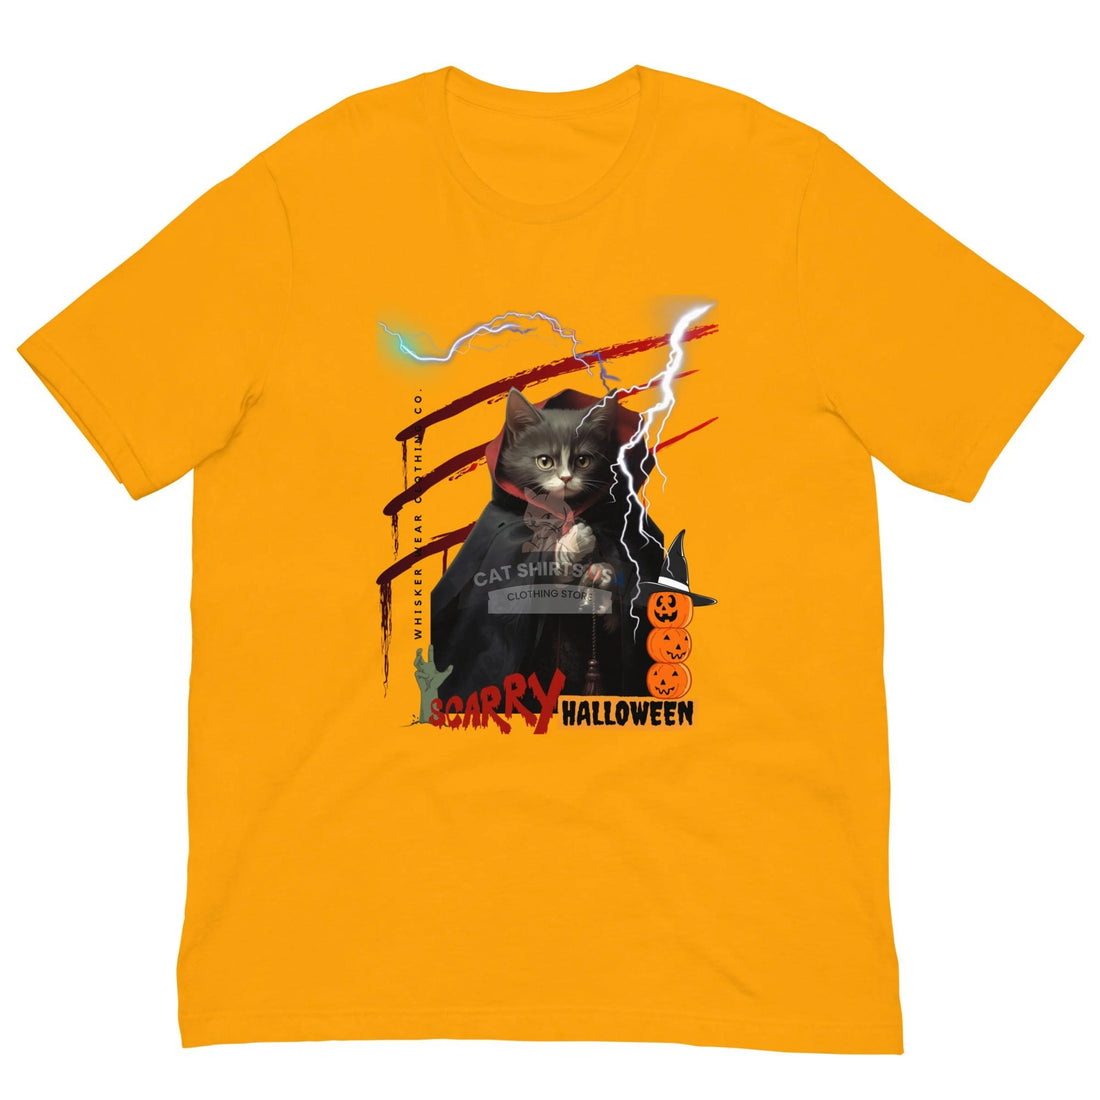 Scarry Halloween Cat Shirt - Cat Shirts USA